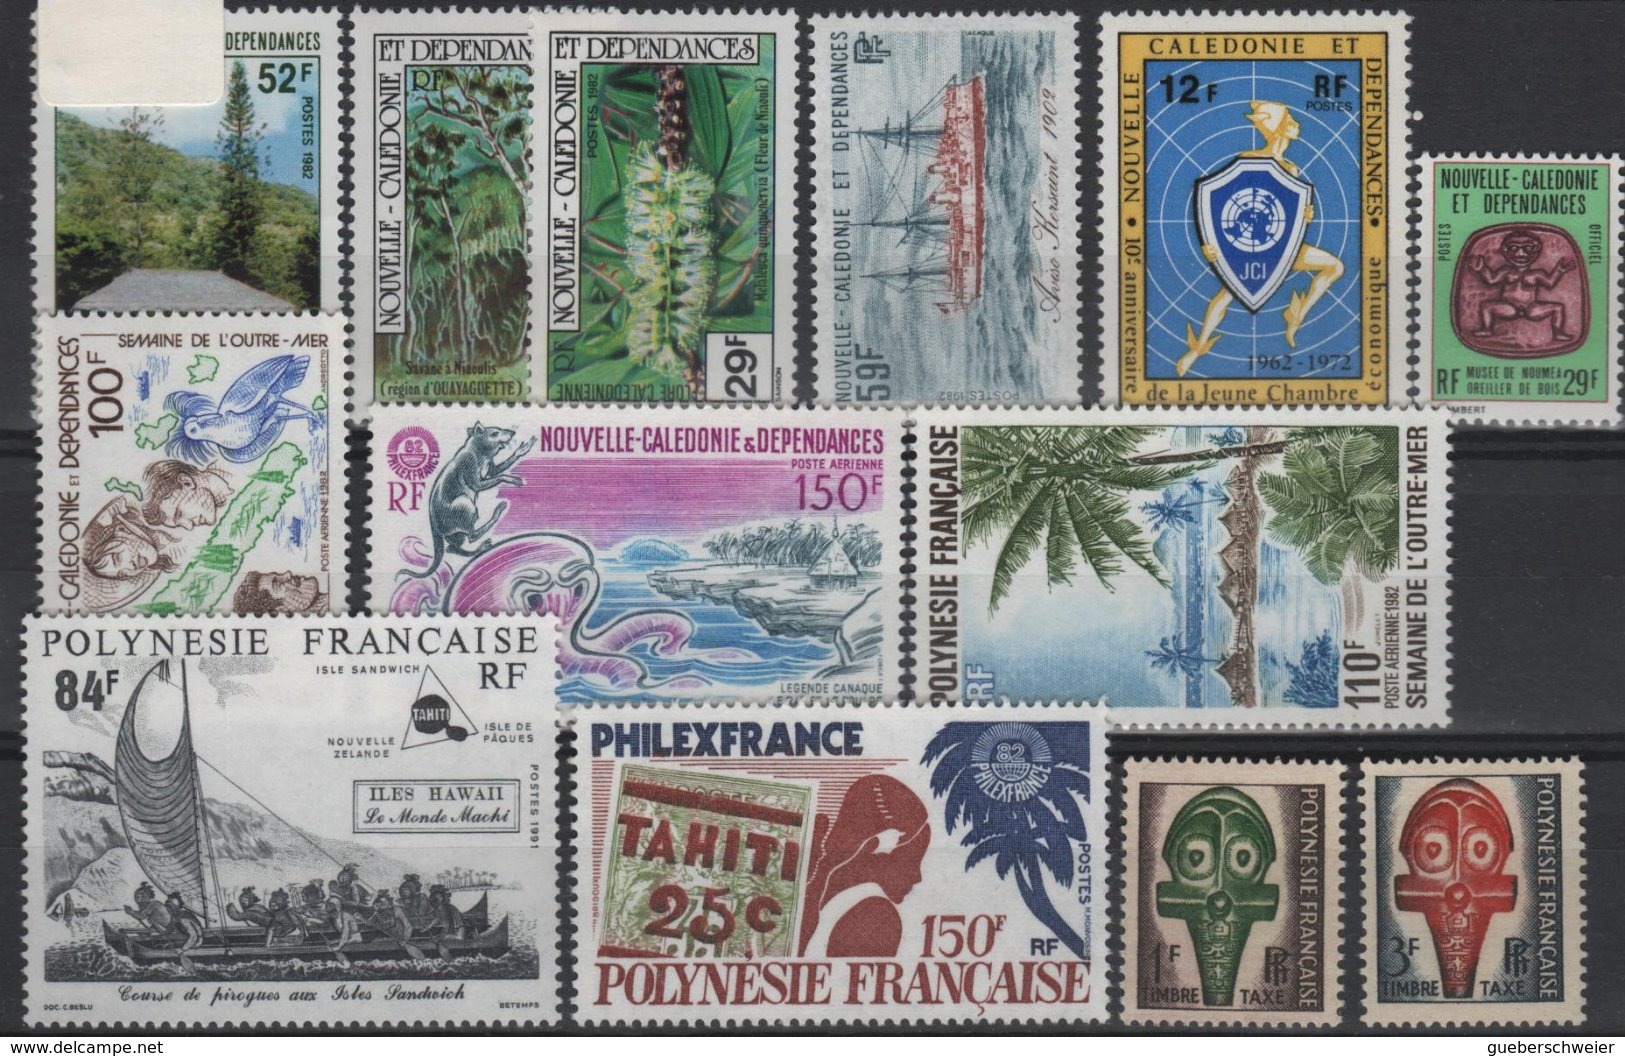 Carton de 3,5 kg de Timbres, lettres, entiers postaux, aérogrammes, beau lot de timbres de France et colonies